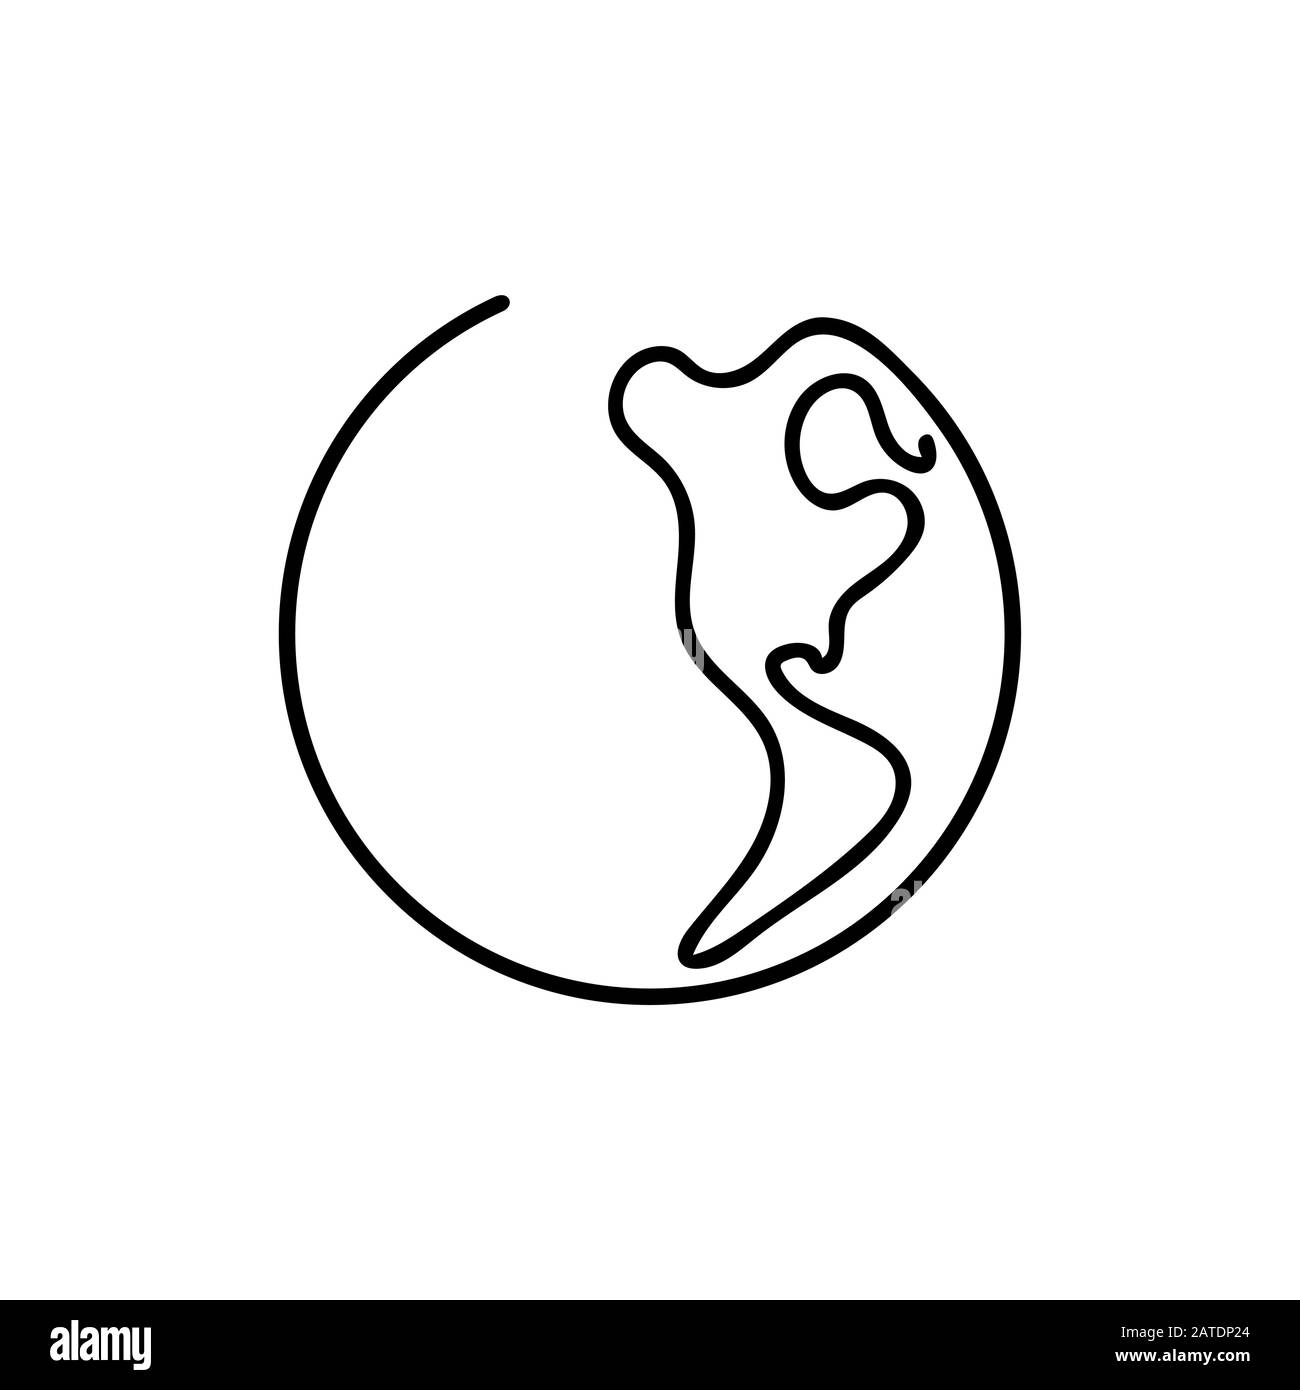 Planète Terre Line art - Un monde de style de ligne. Design vectoriel simple et moderne de style minimaliste pour affiches, dépliants, tee-shirts, cartes, invitations, autocollants Illustration de Vecteur